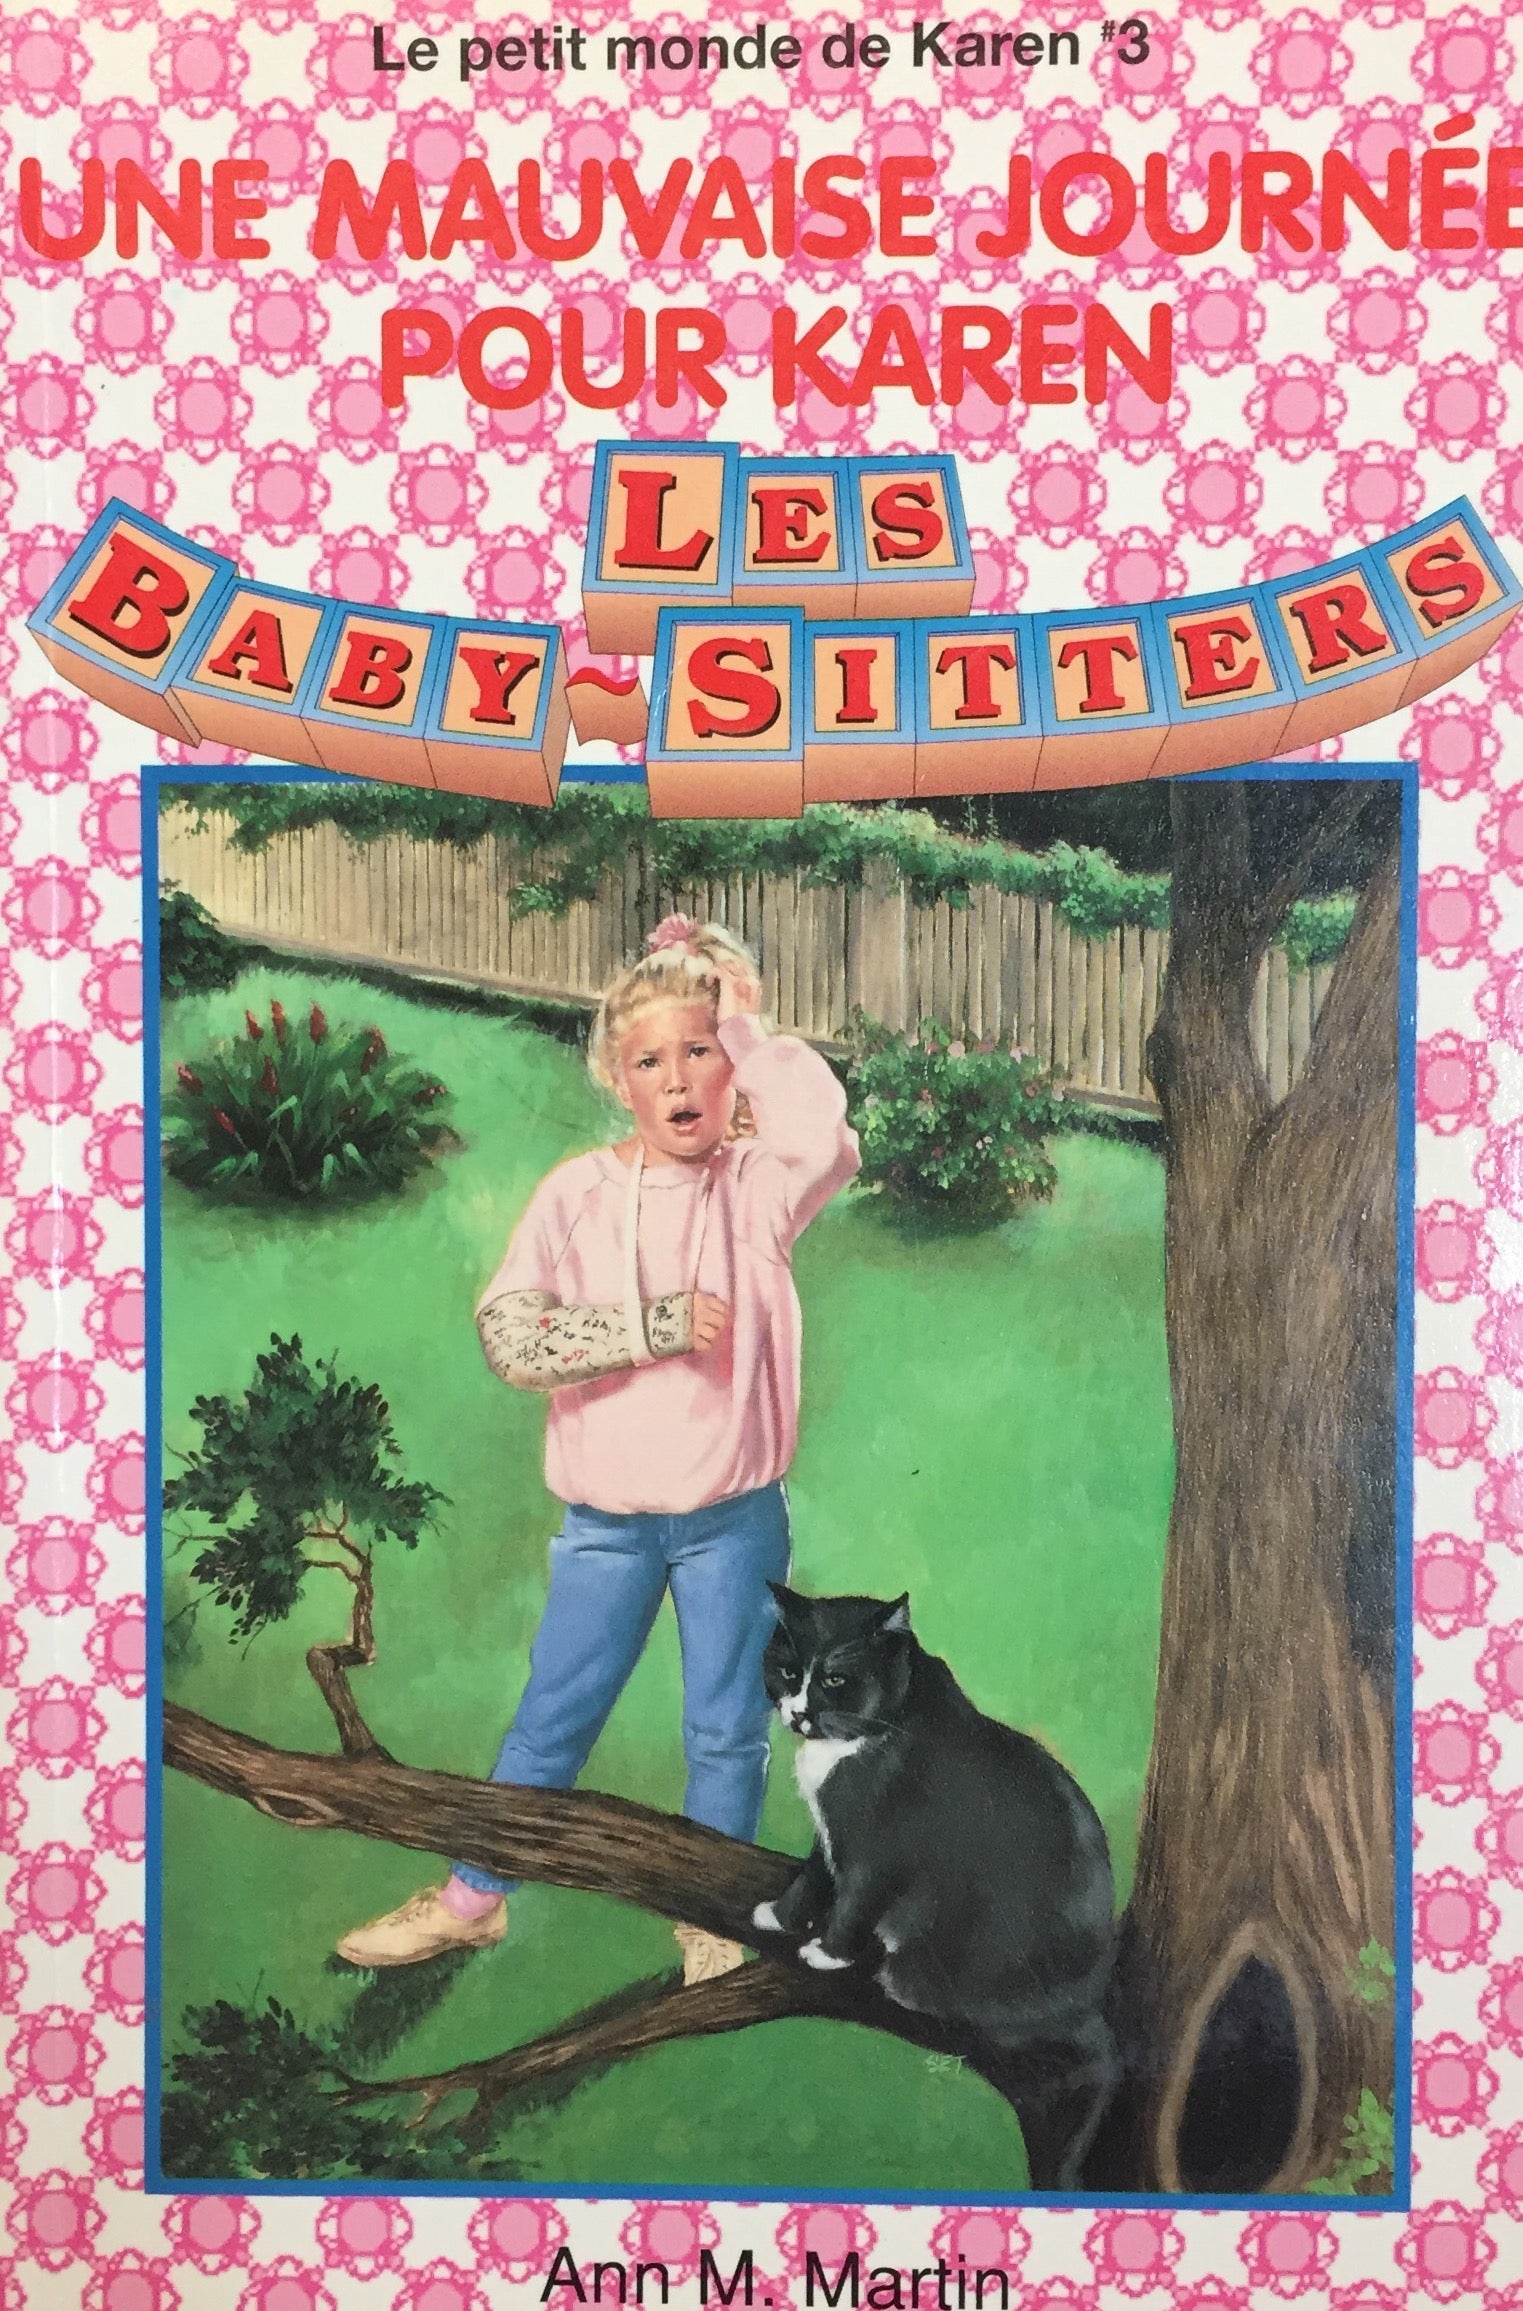 Les Baby-Sitters (Le petit monde de Karen) # 3 : Une mauvaise journée pour Karen - Ann M. Martin